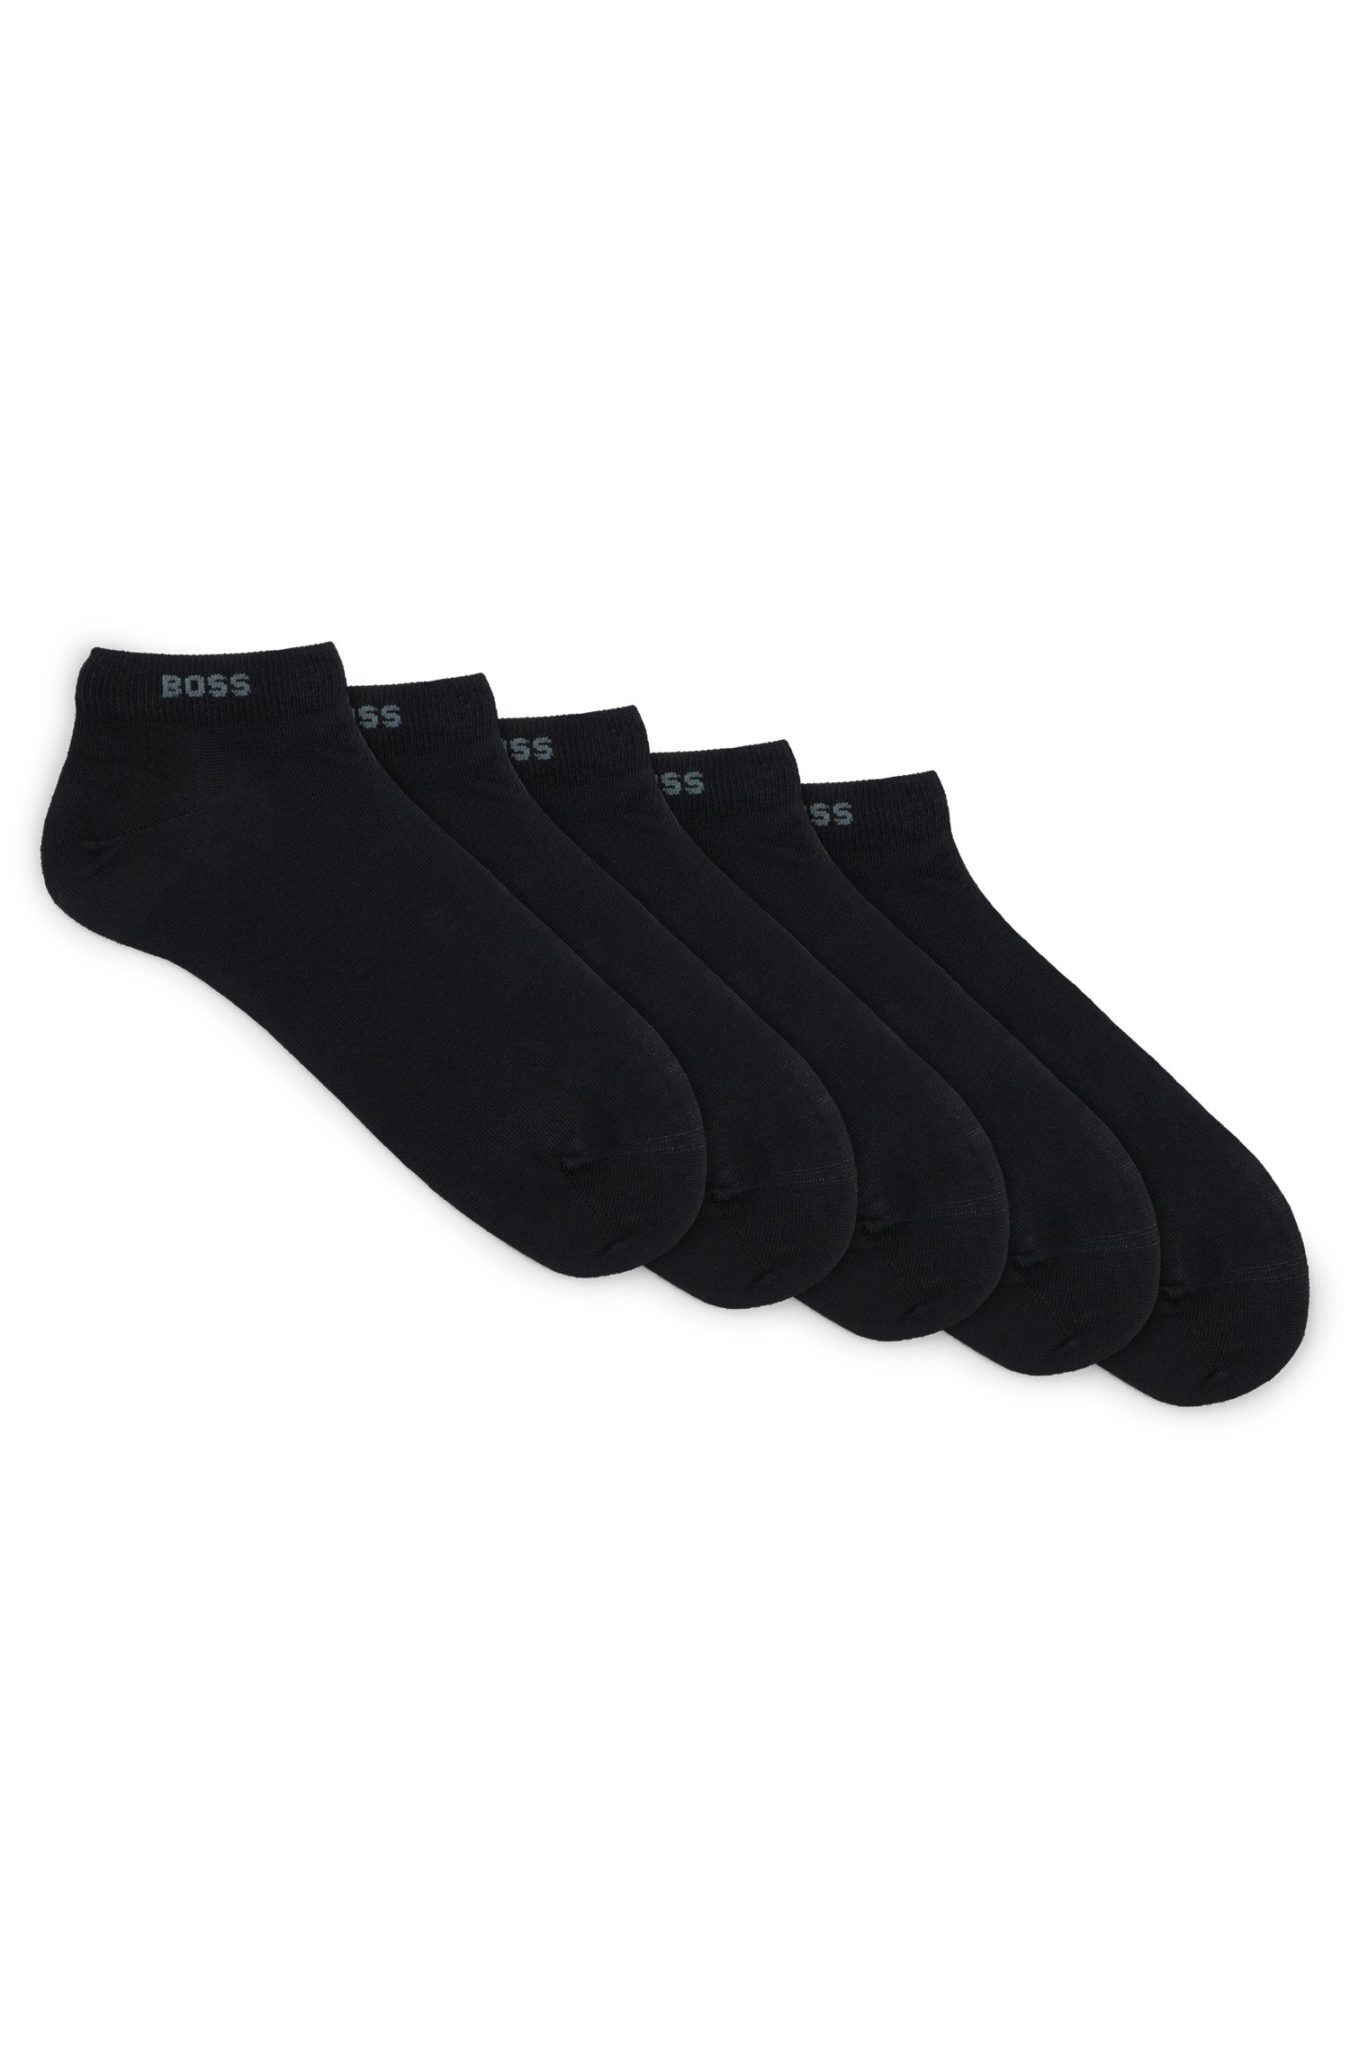 Hugo Boss Lot de cinq paires de chaussettes basses en coton mélangé avec logo